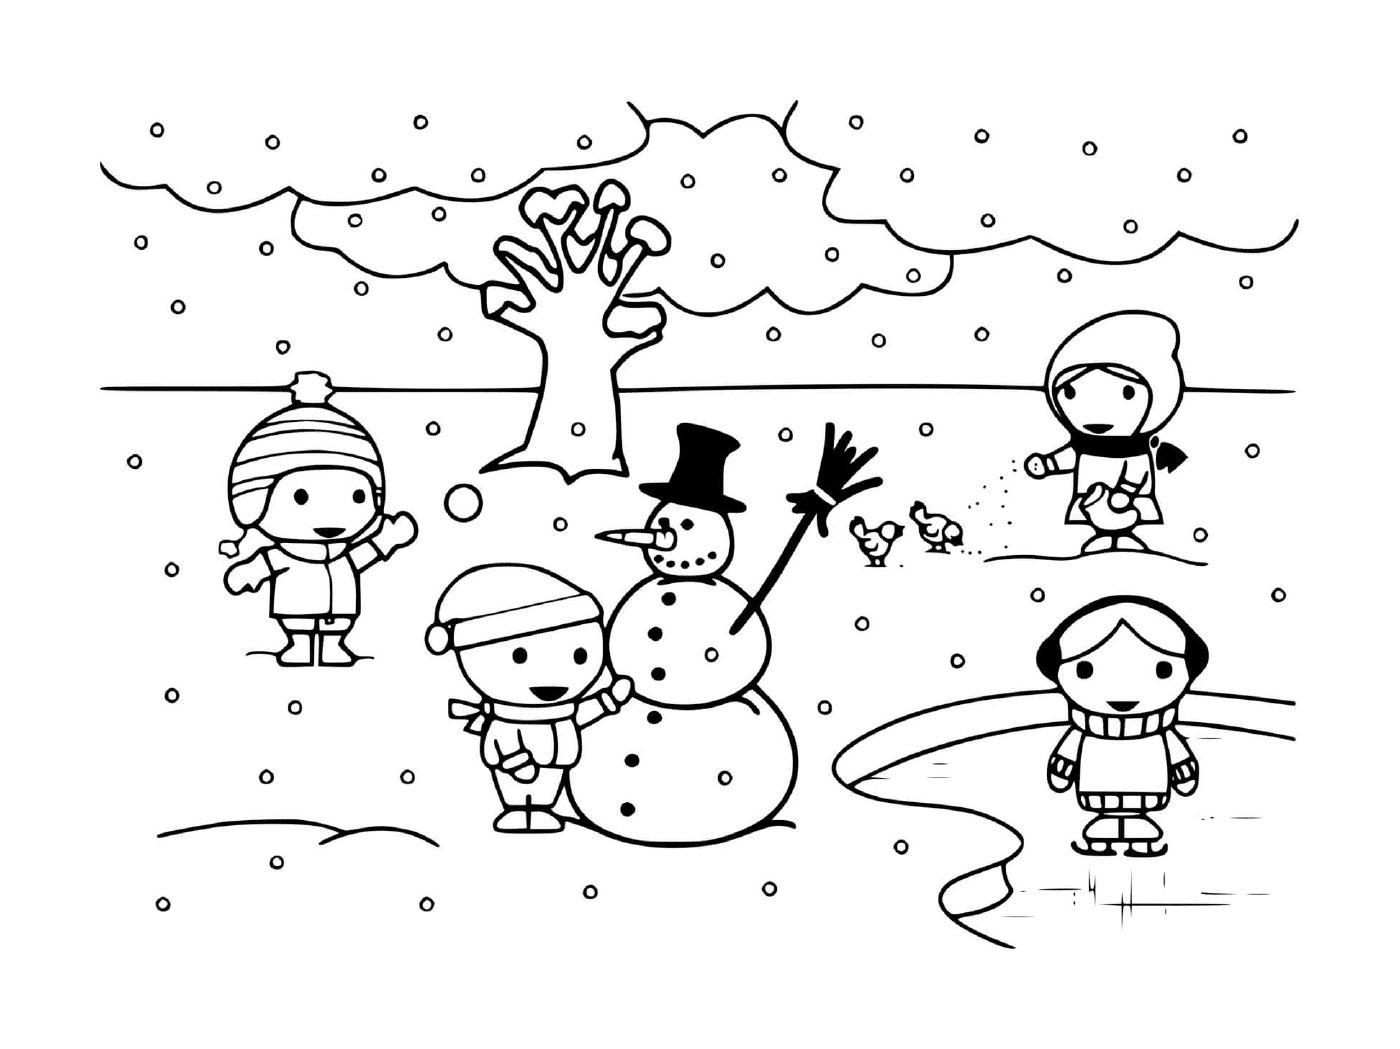  सर्दियों में बच्चे बर्फ के साथ खेलते हैं 